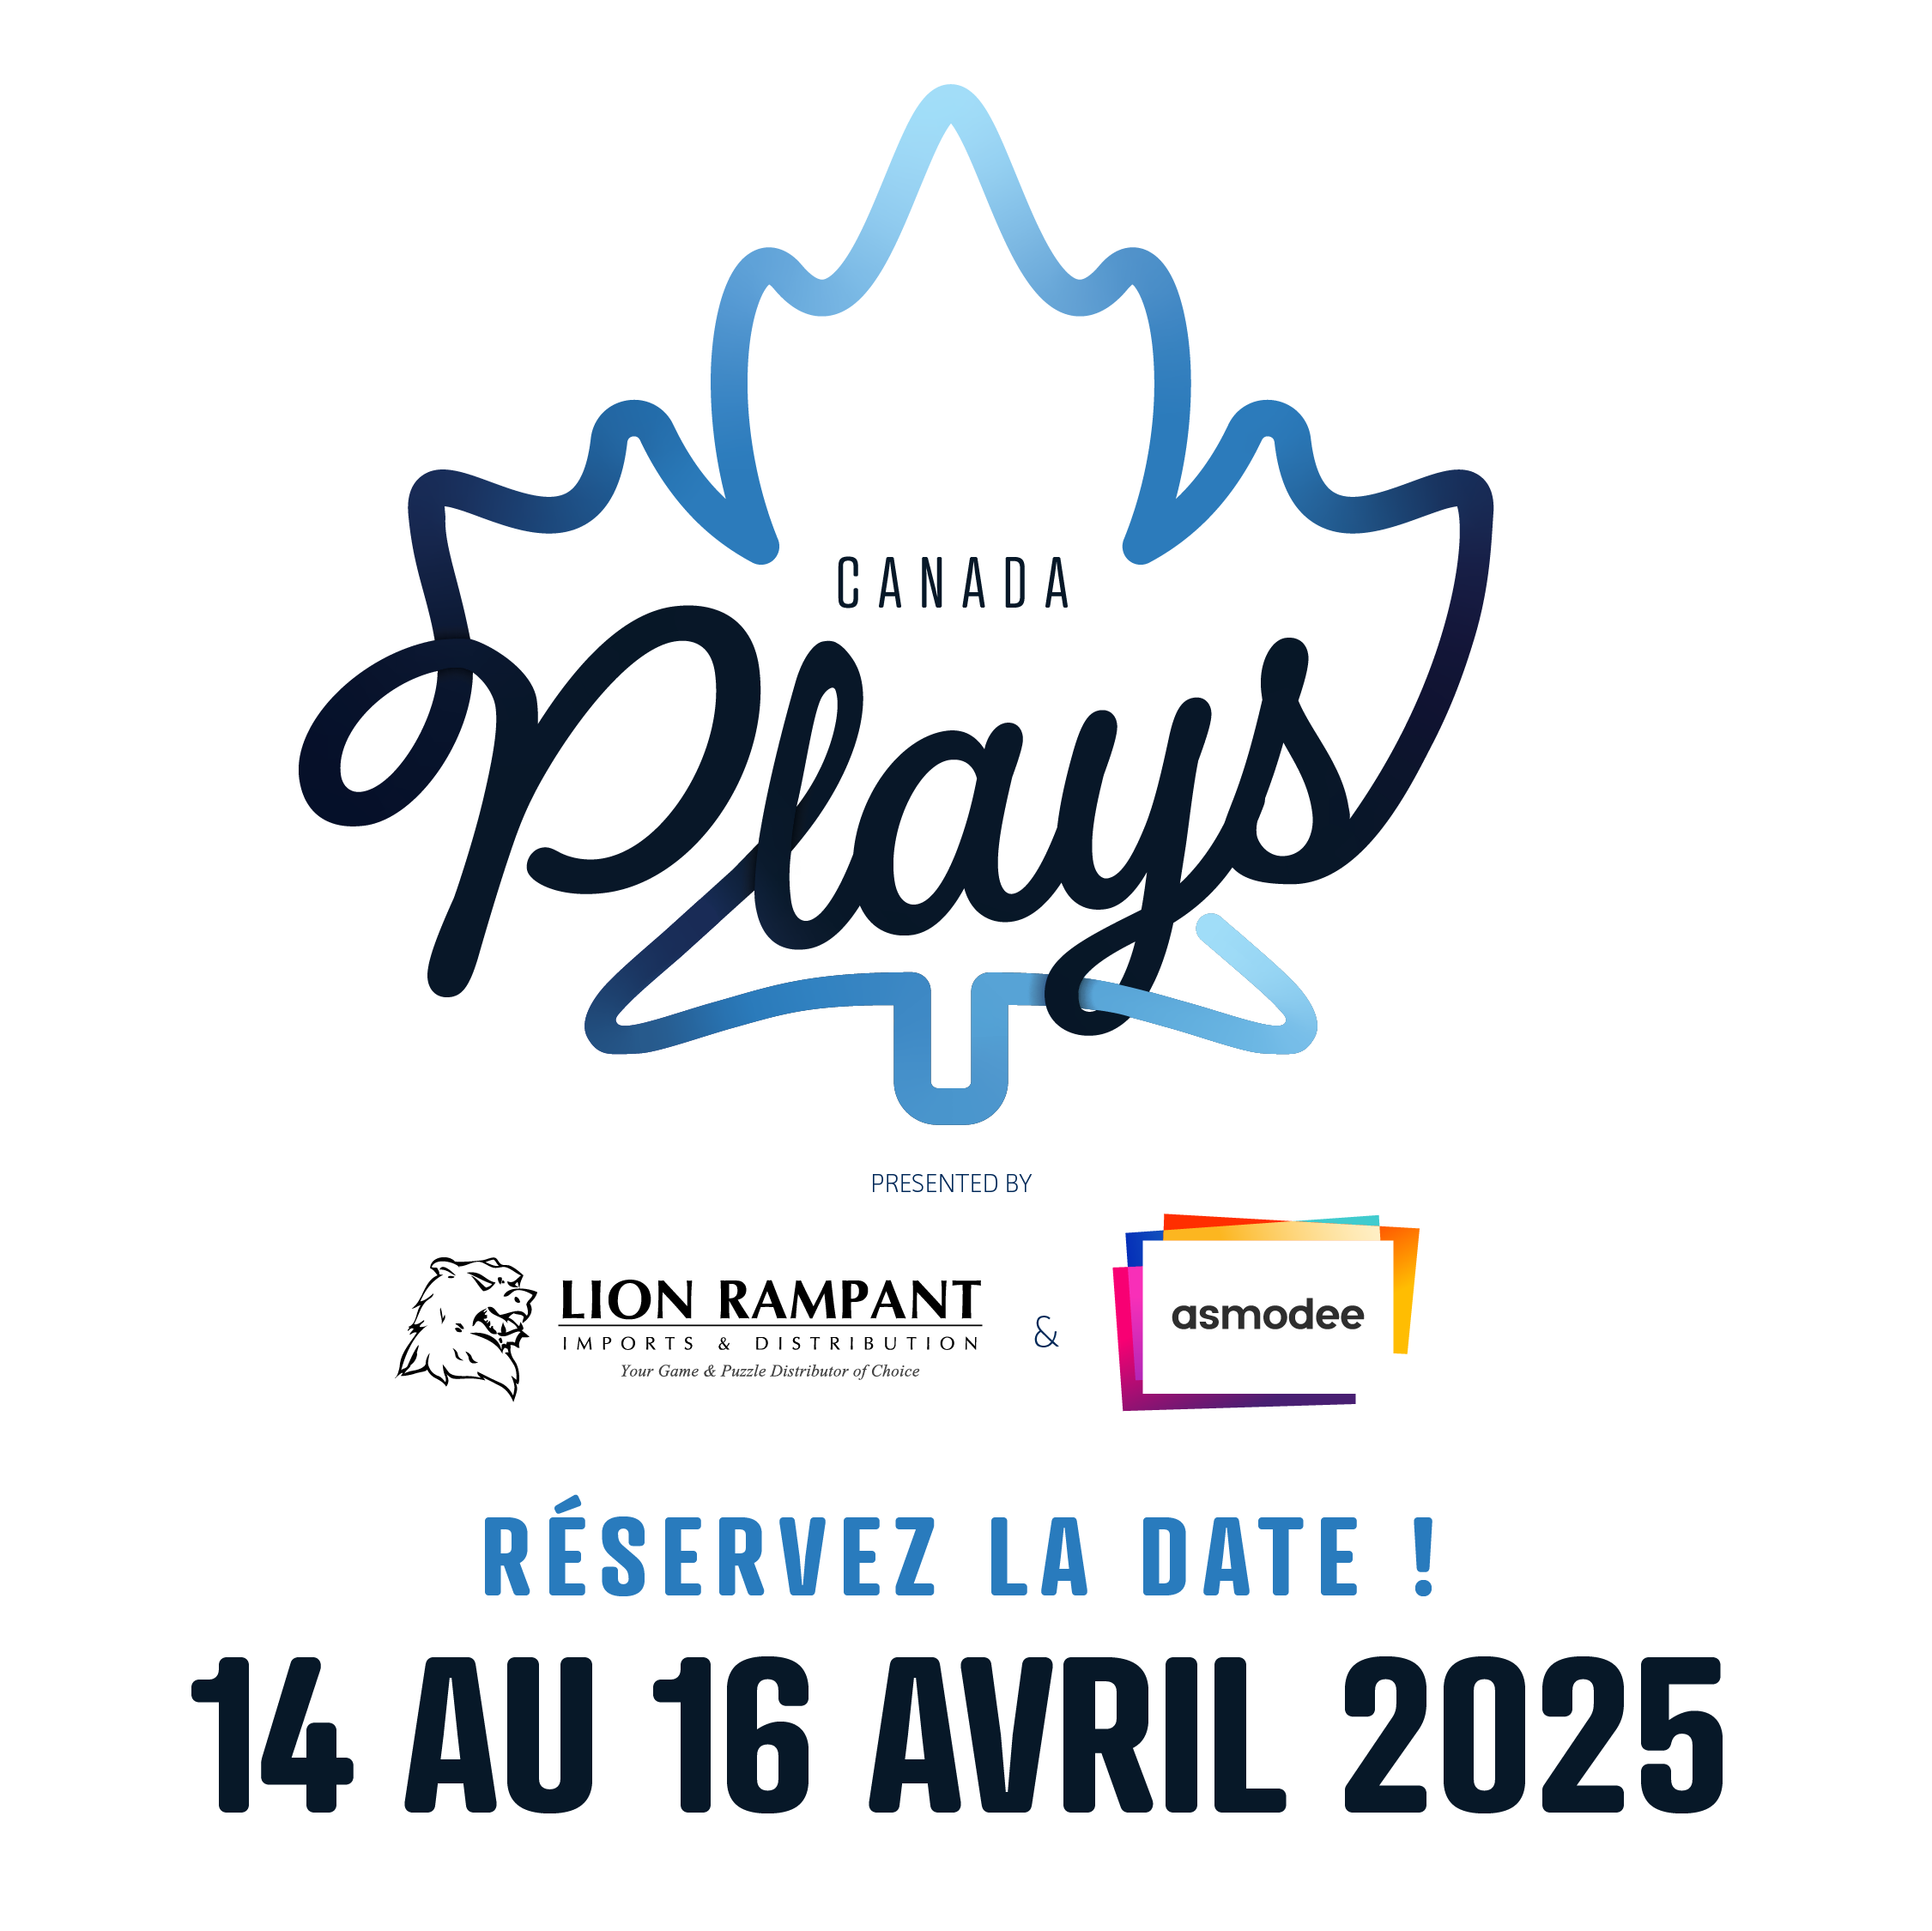 Canada Plays - Réservez la date: 14 au 16 avril 2025